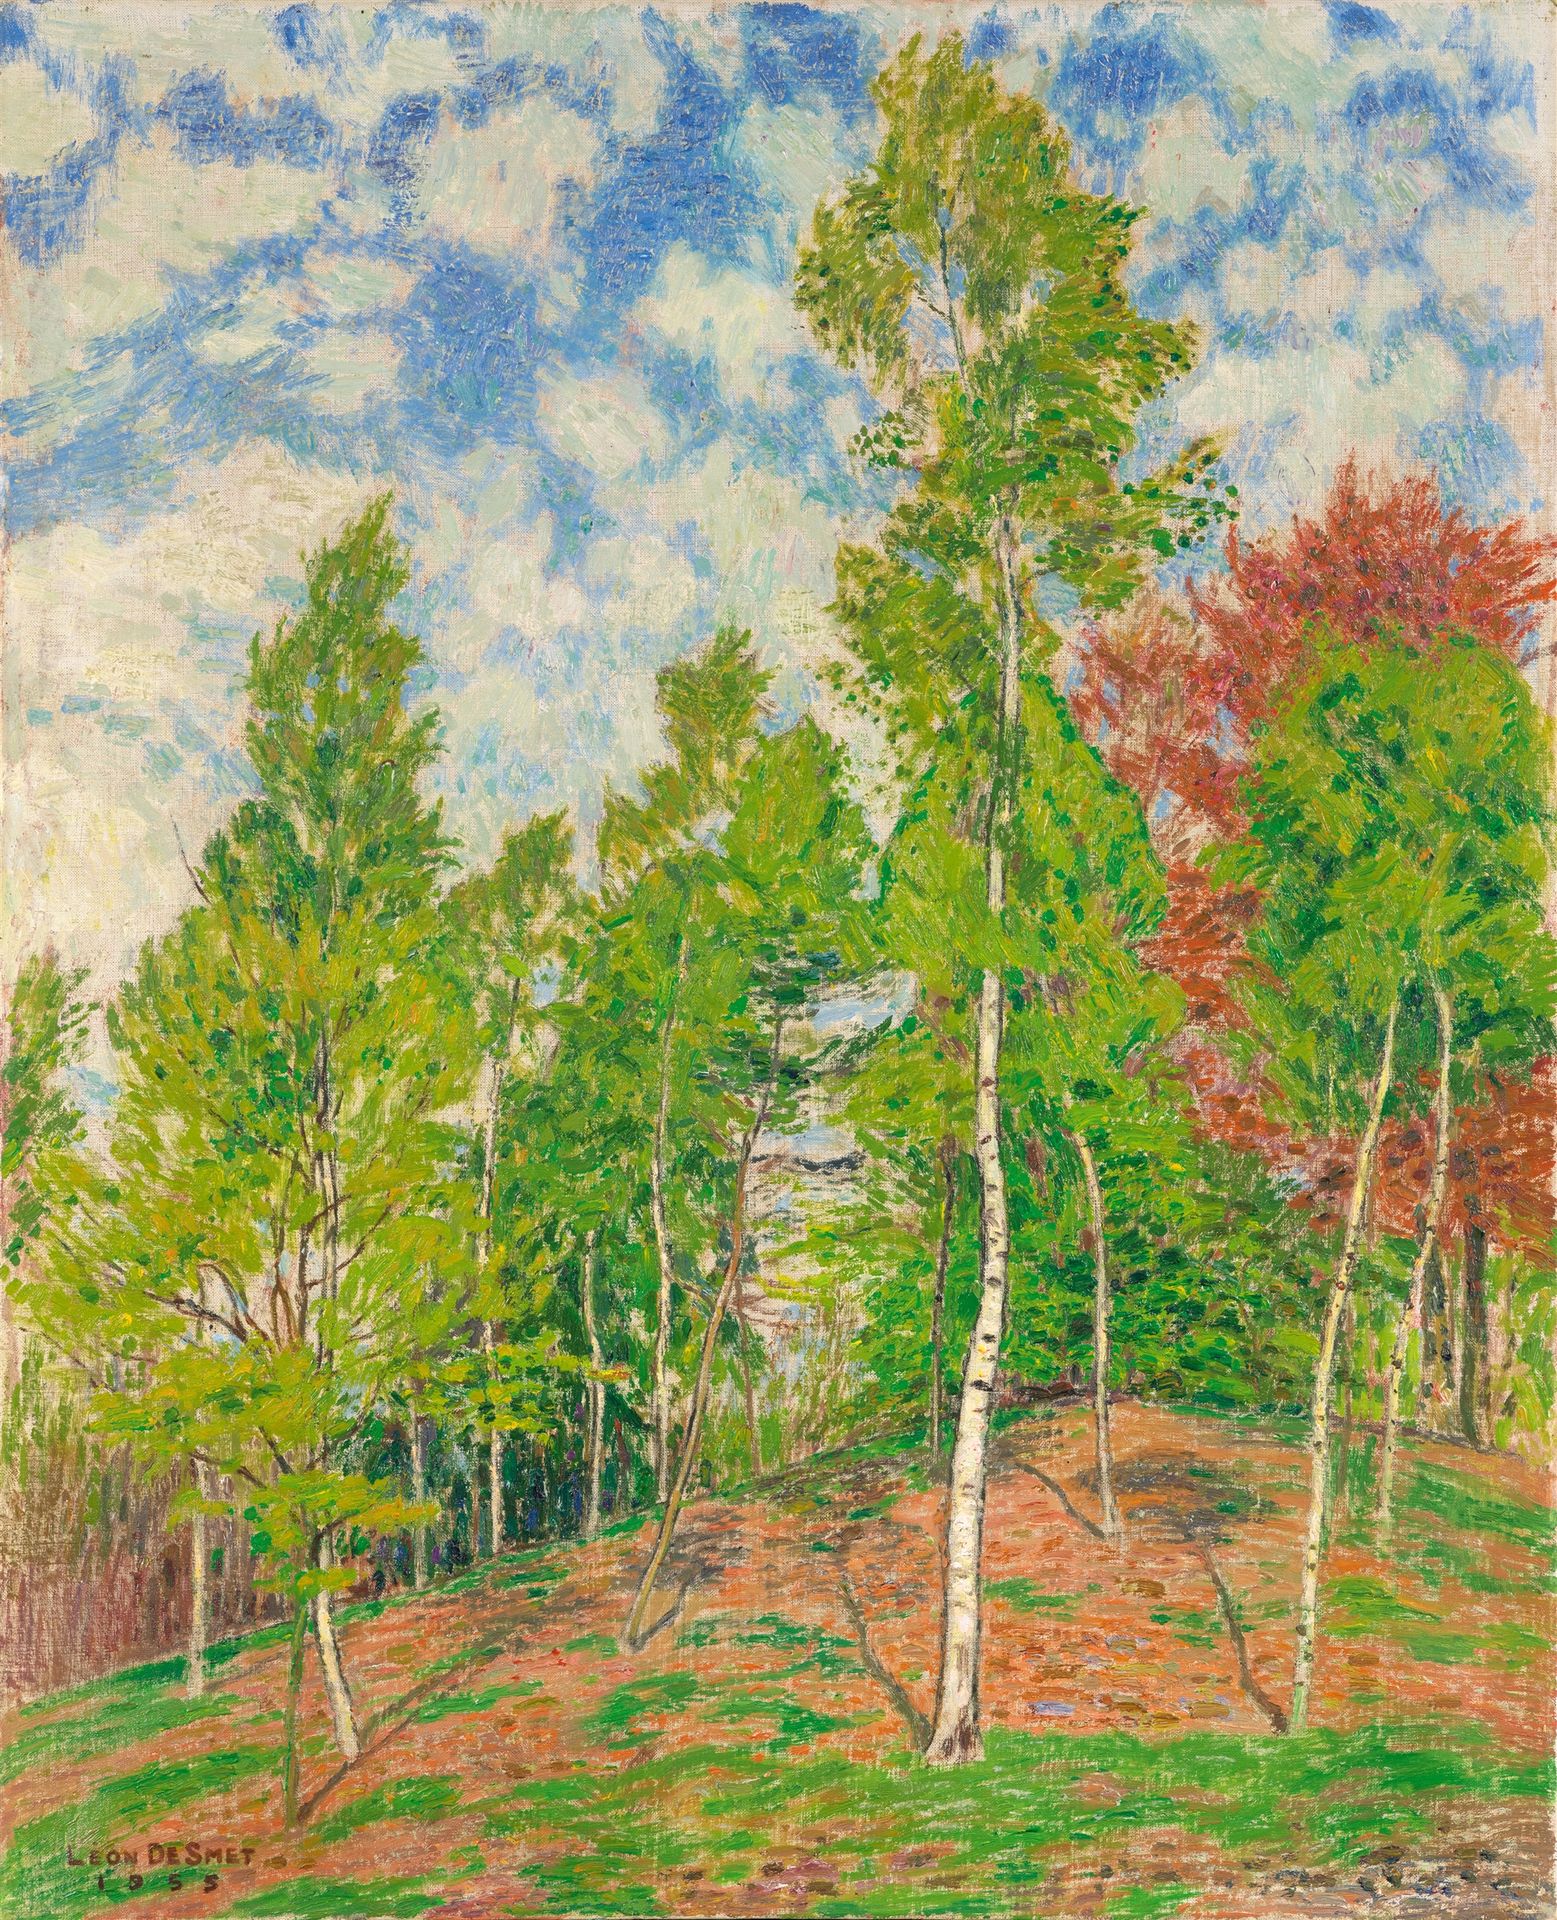 Léon de Smet Léon de Smet







桦树和铜山毛榉



1955







布面油画。80 x 65厘米。有框。左下方有棕色&hellip;